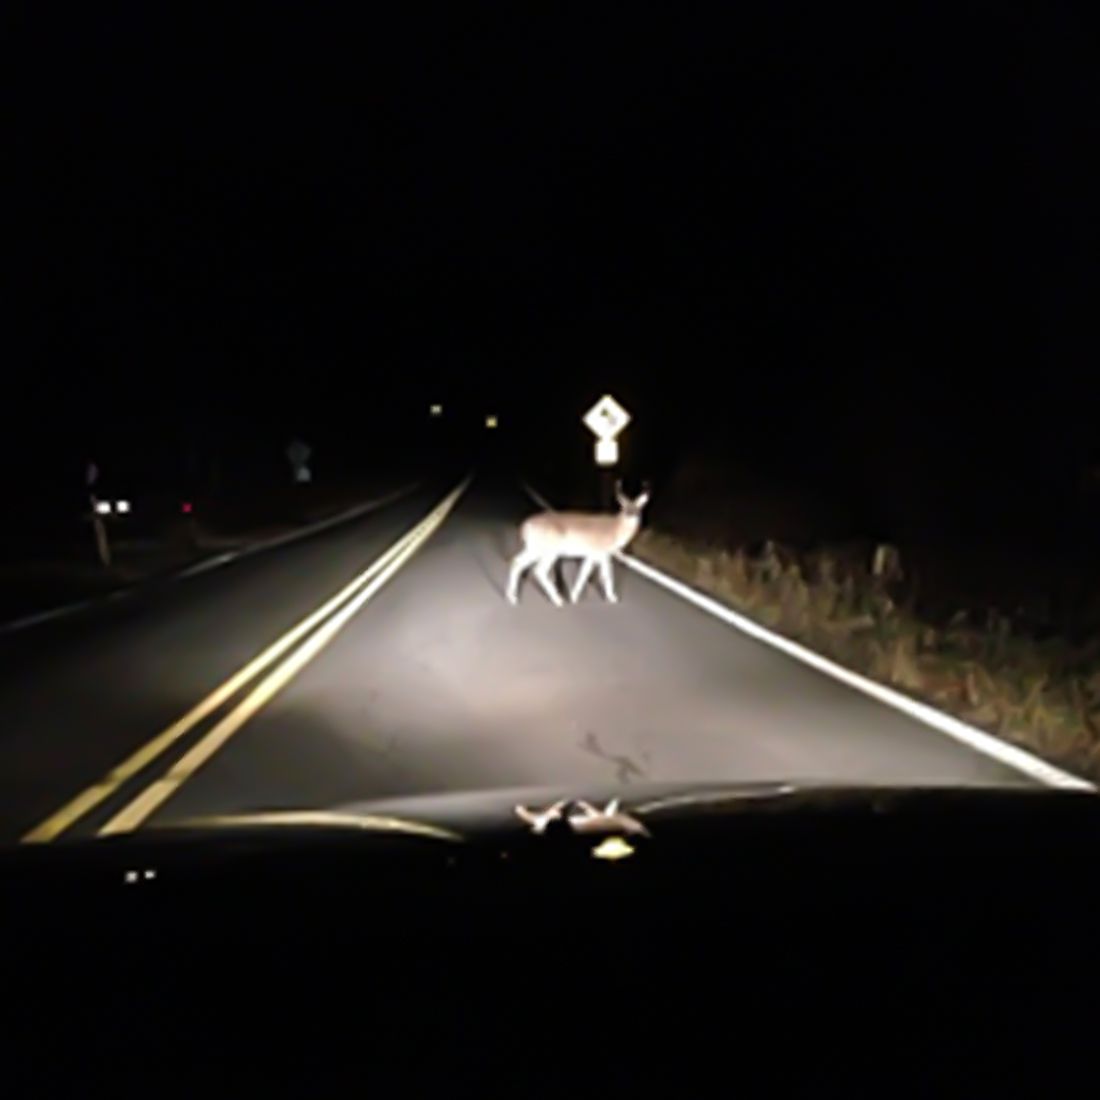 Deer headlight safety